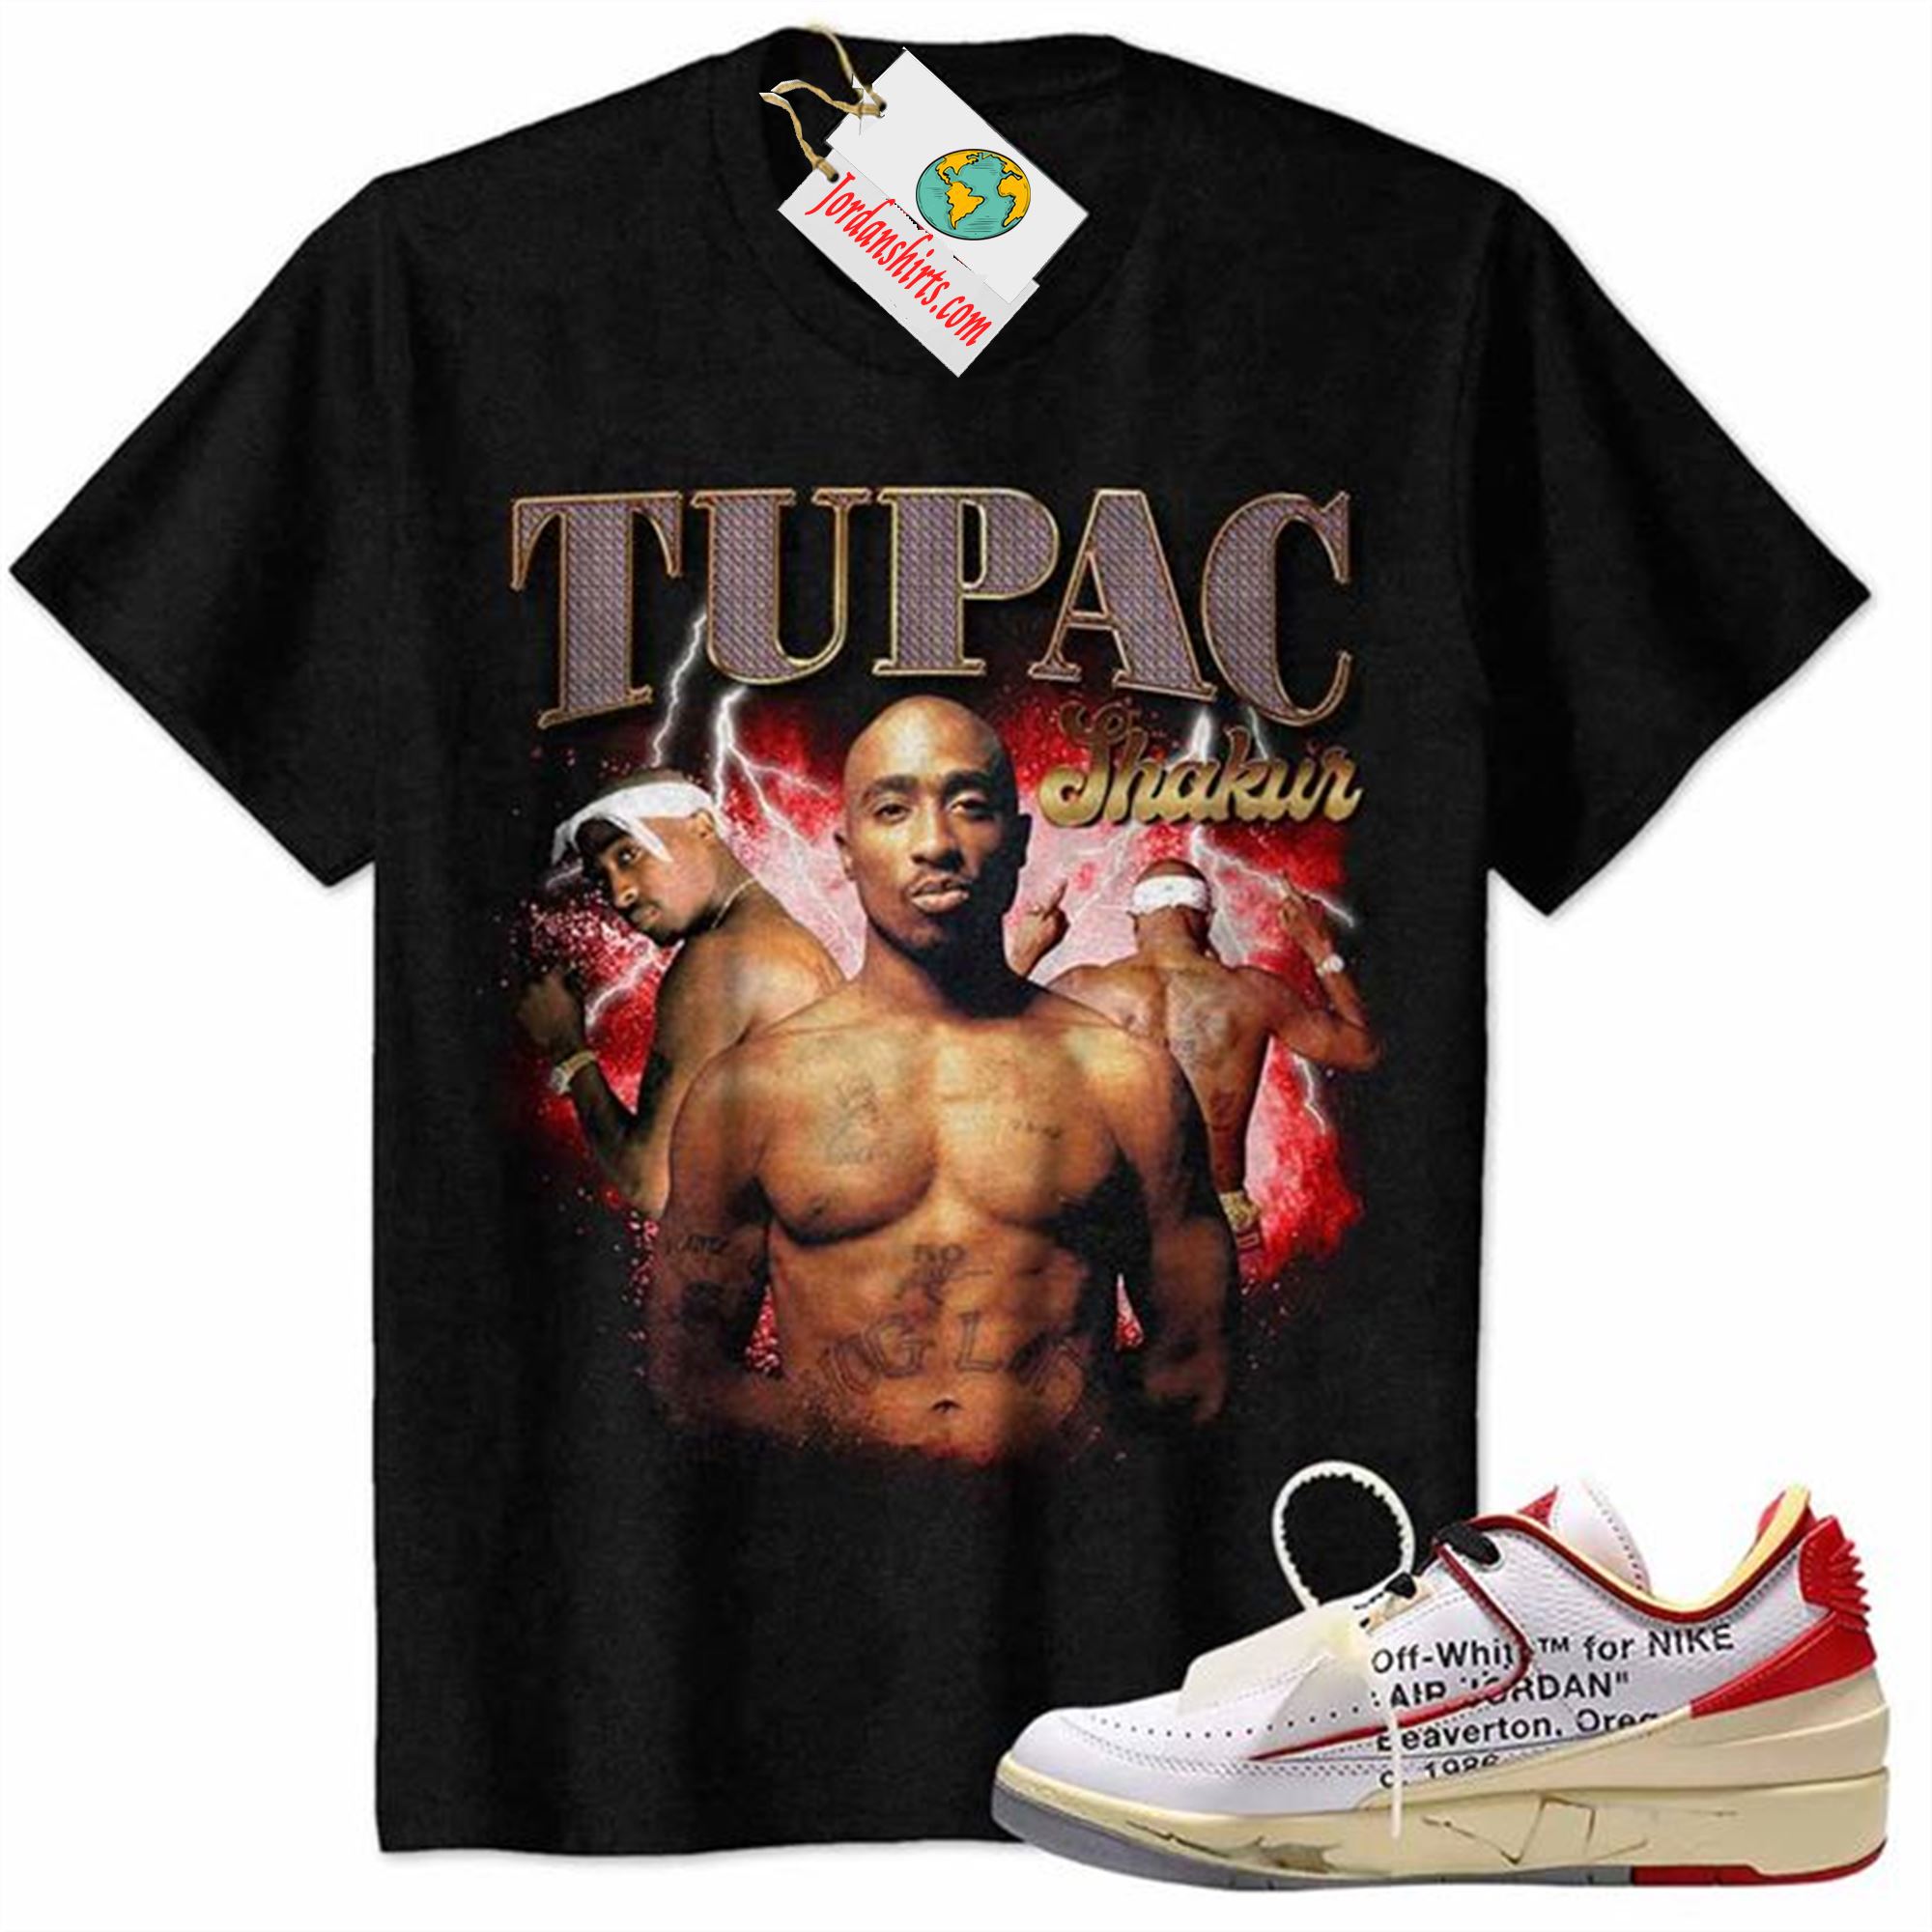 Jordan 2 Shirt, Tupac 2pac Shakur Graphic Black Air Jordan 2 Low White Red Off-white 2s Plus Size Up To 5xl